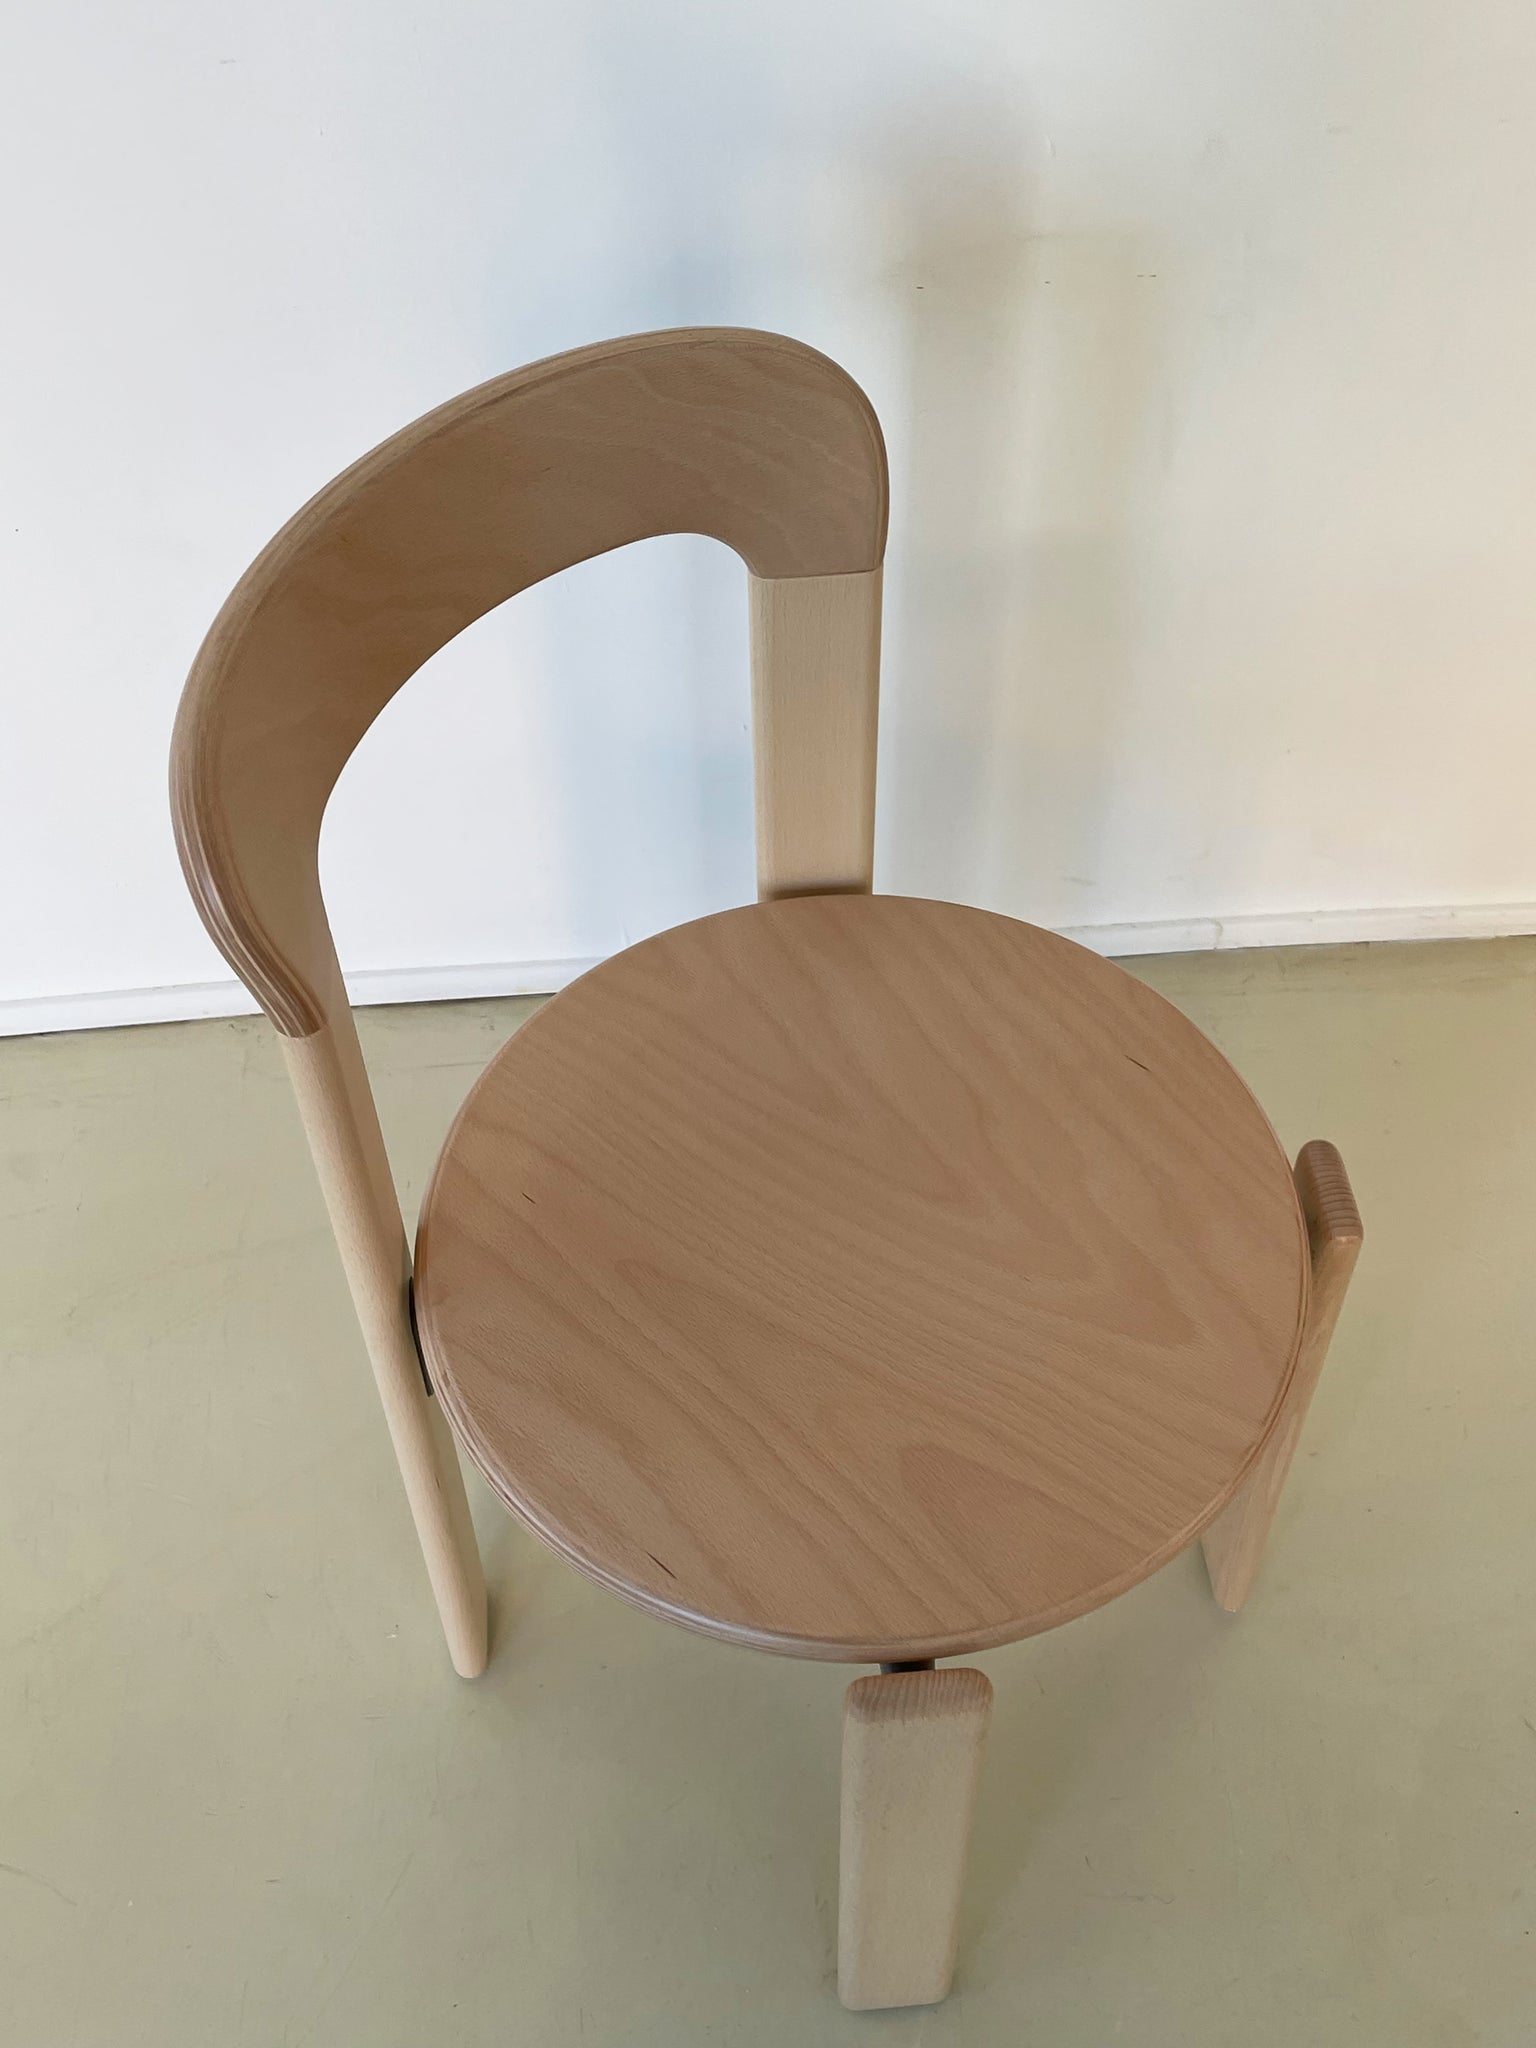 Bruno Rey's "Rey" Chair by Dietiker in Beechwood